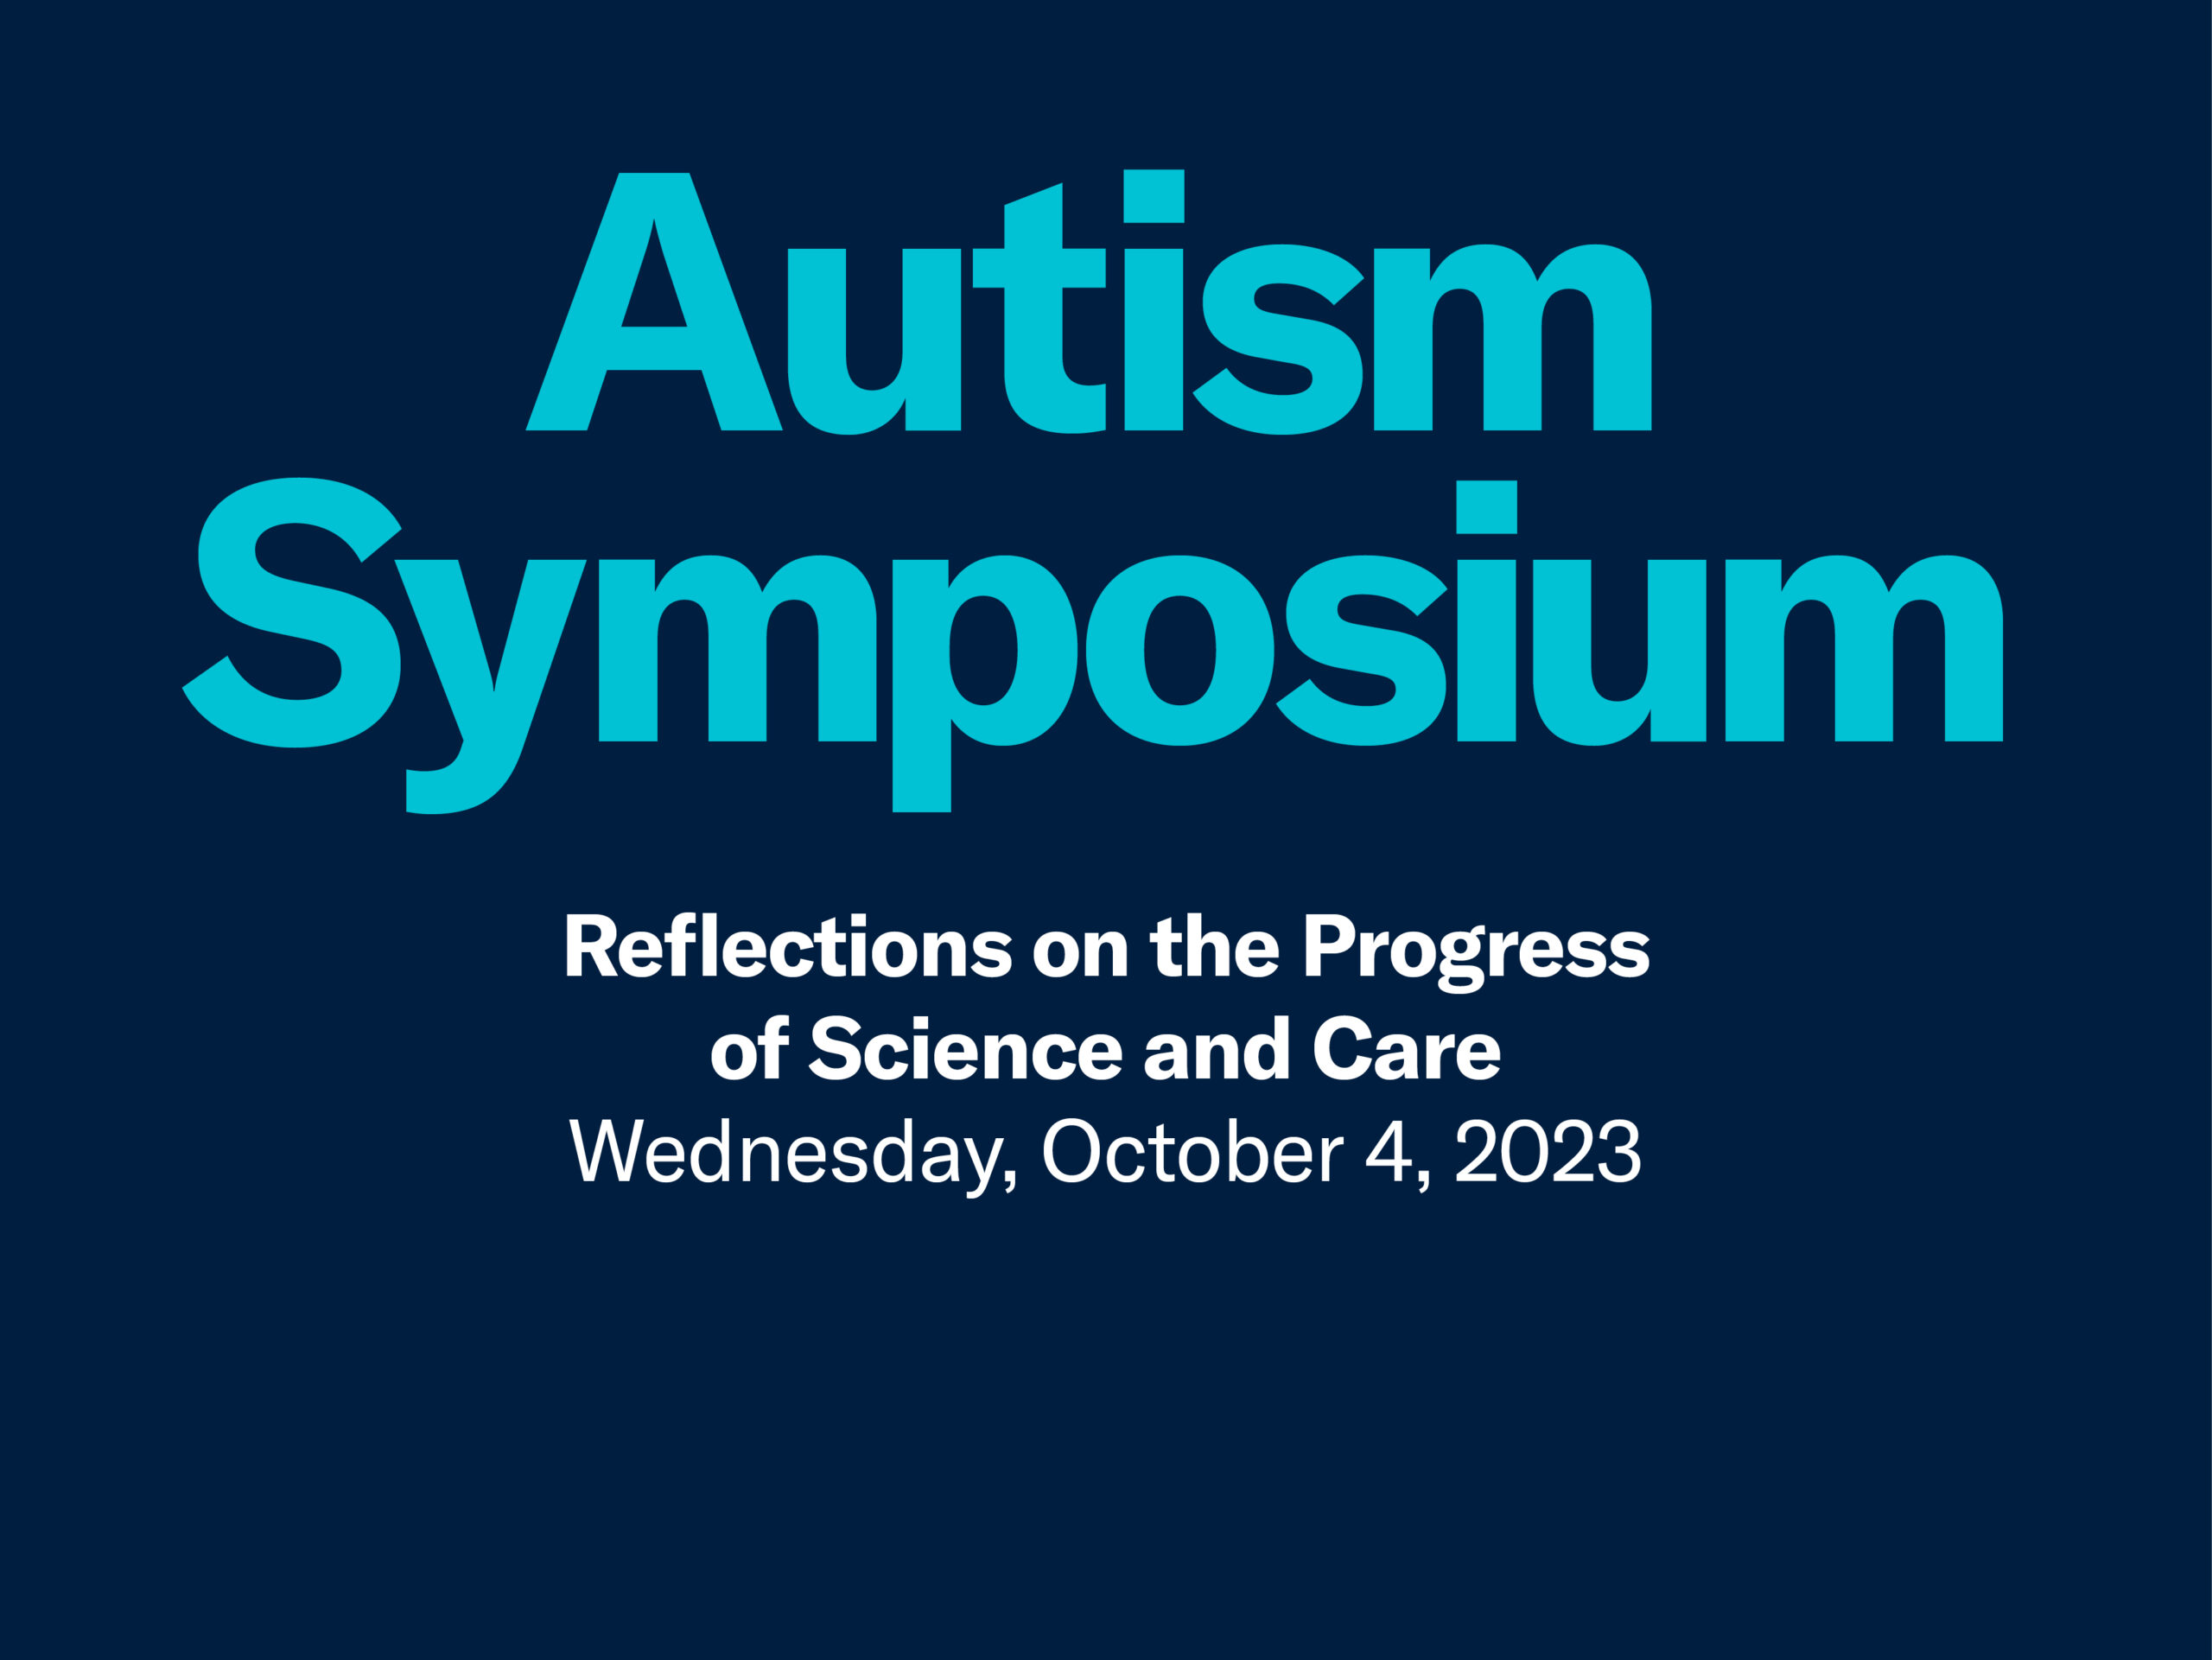 2023 Autism Symposium